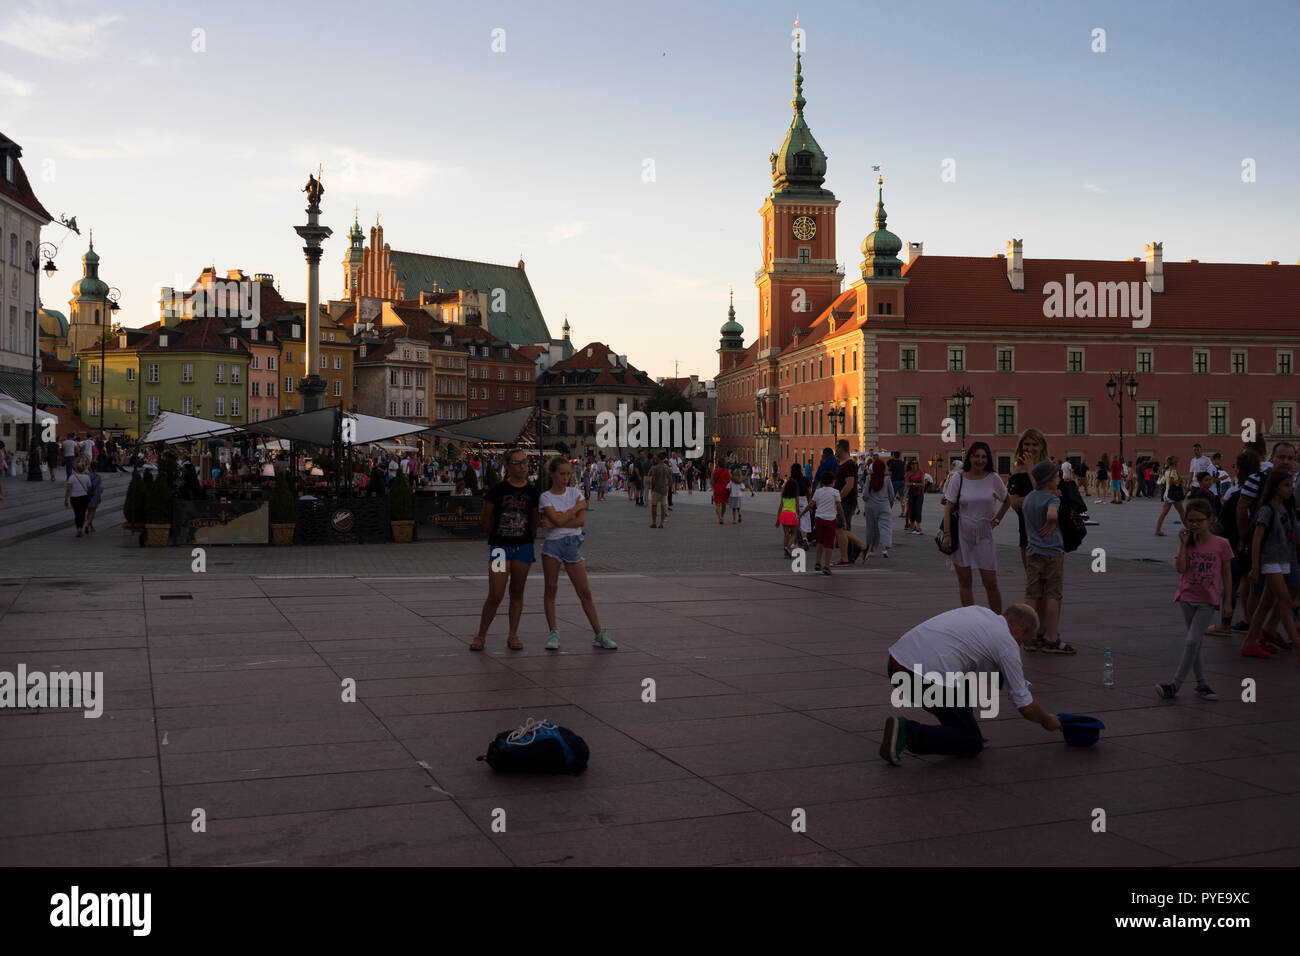 Der Schlossplatz in Warschau ist ein Treffpunkt für Touristen und Einheimische, die sich hier versammeln, Straßenkünstler und Konzerte zu sehen, Polen 2018. Stockfoto